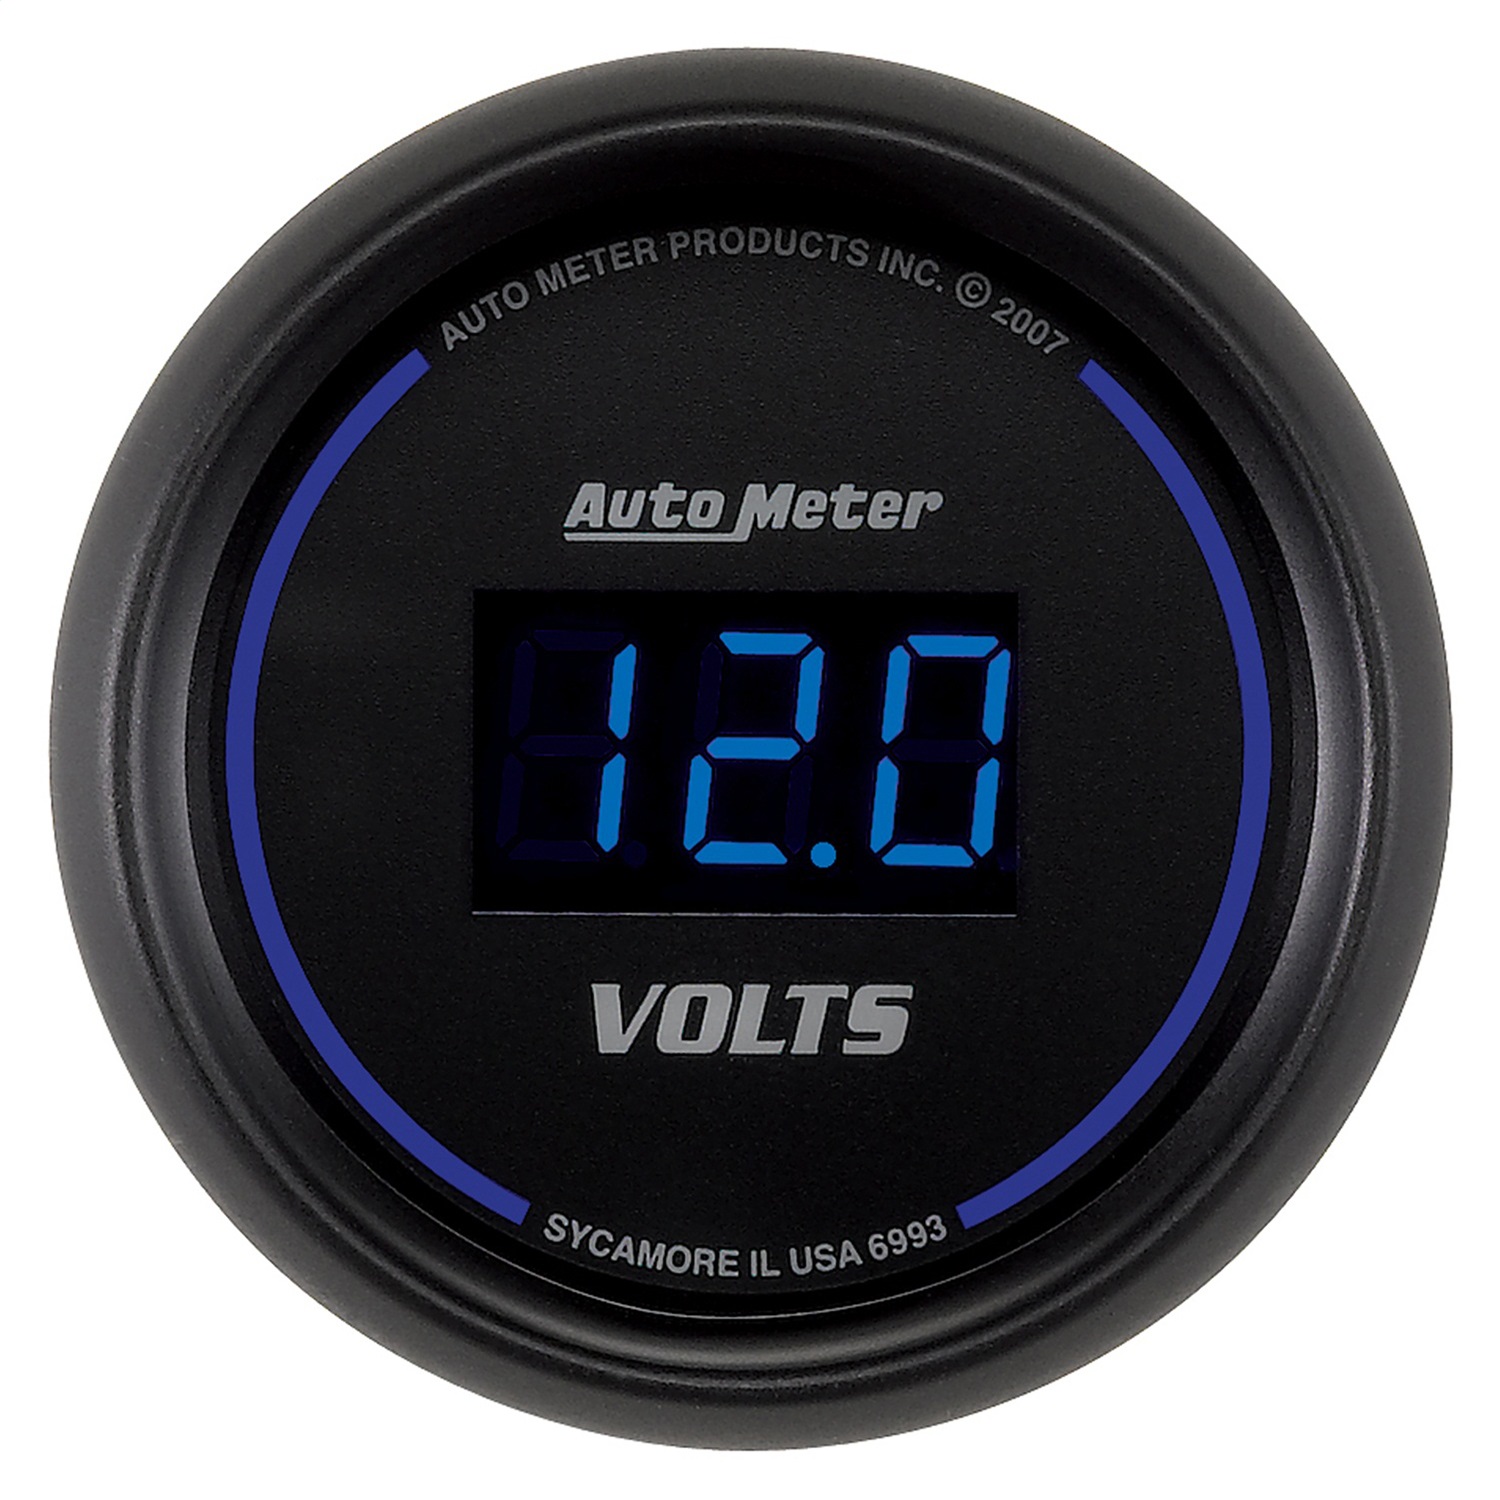 Auto Meter Auto Meter 6993 Cobalt; Digital Voltmeter Gauge